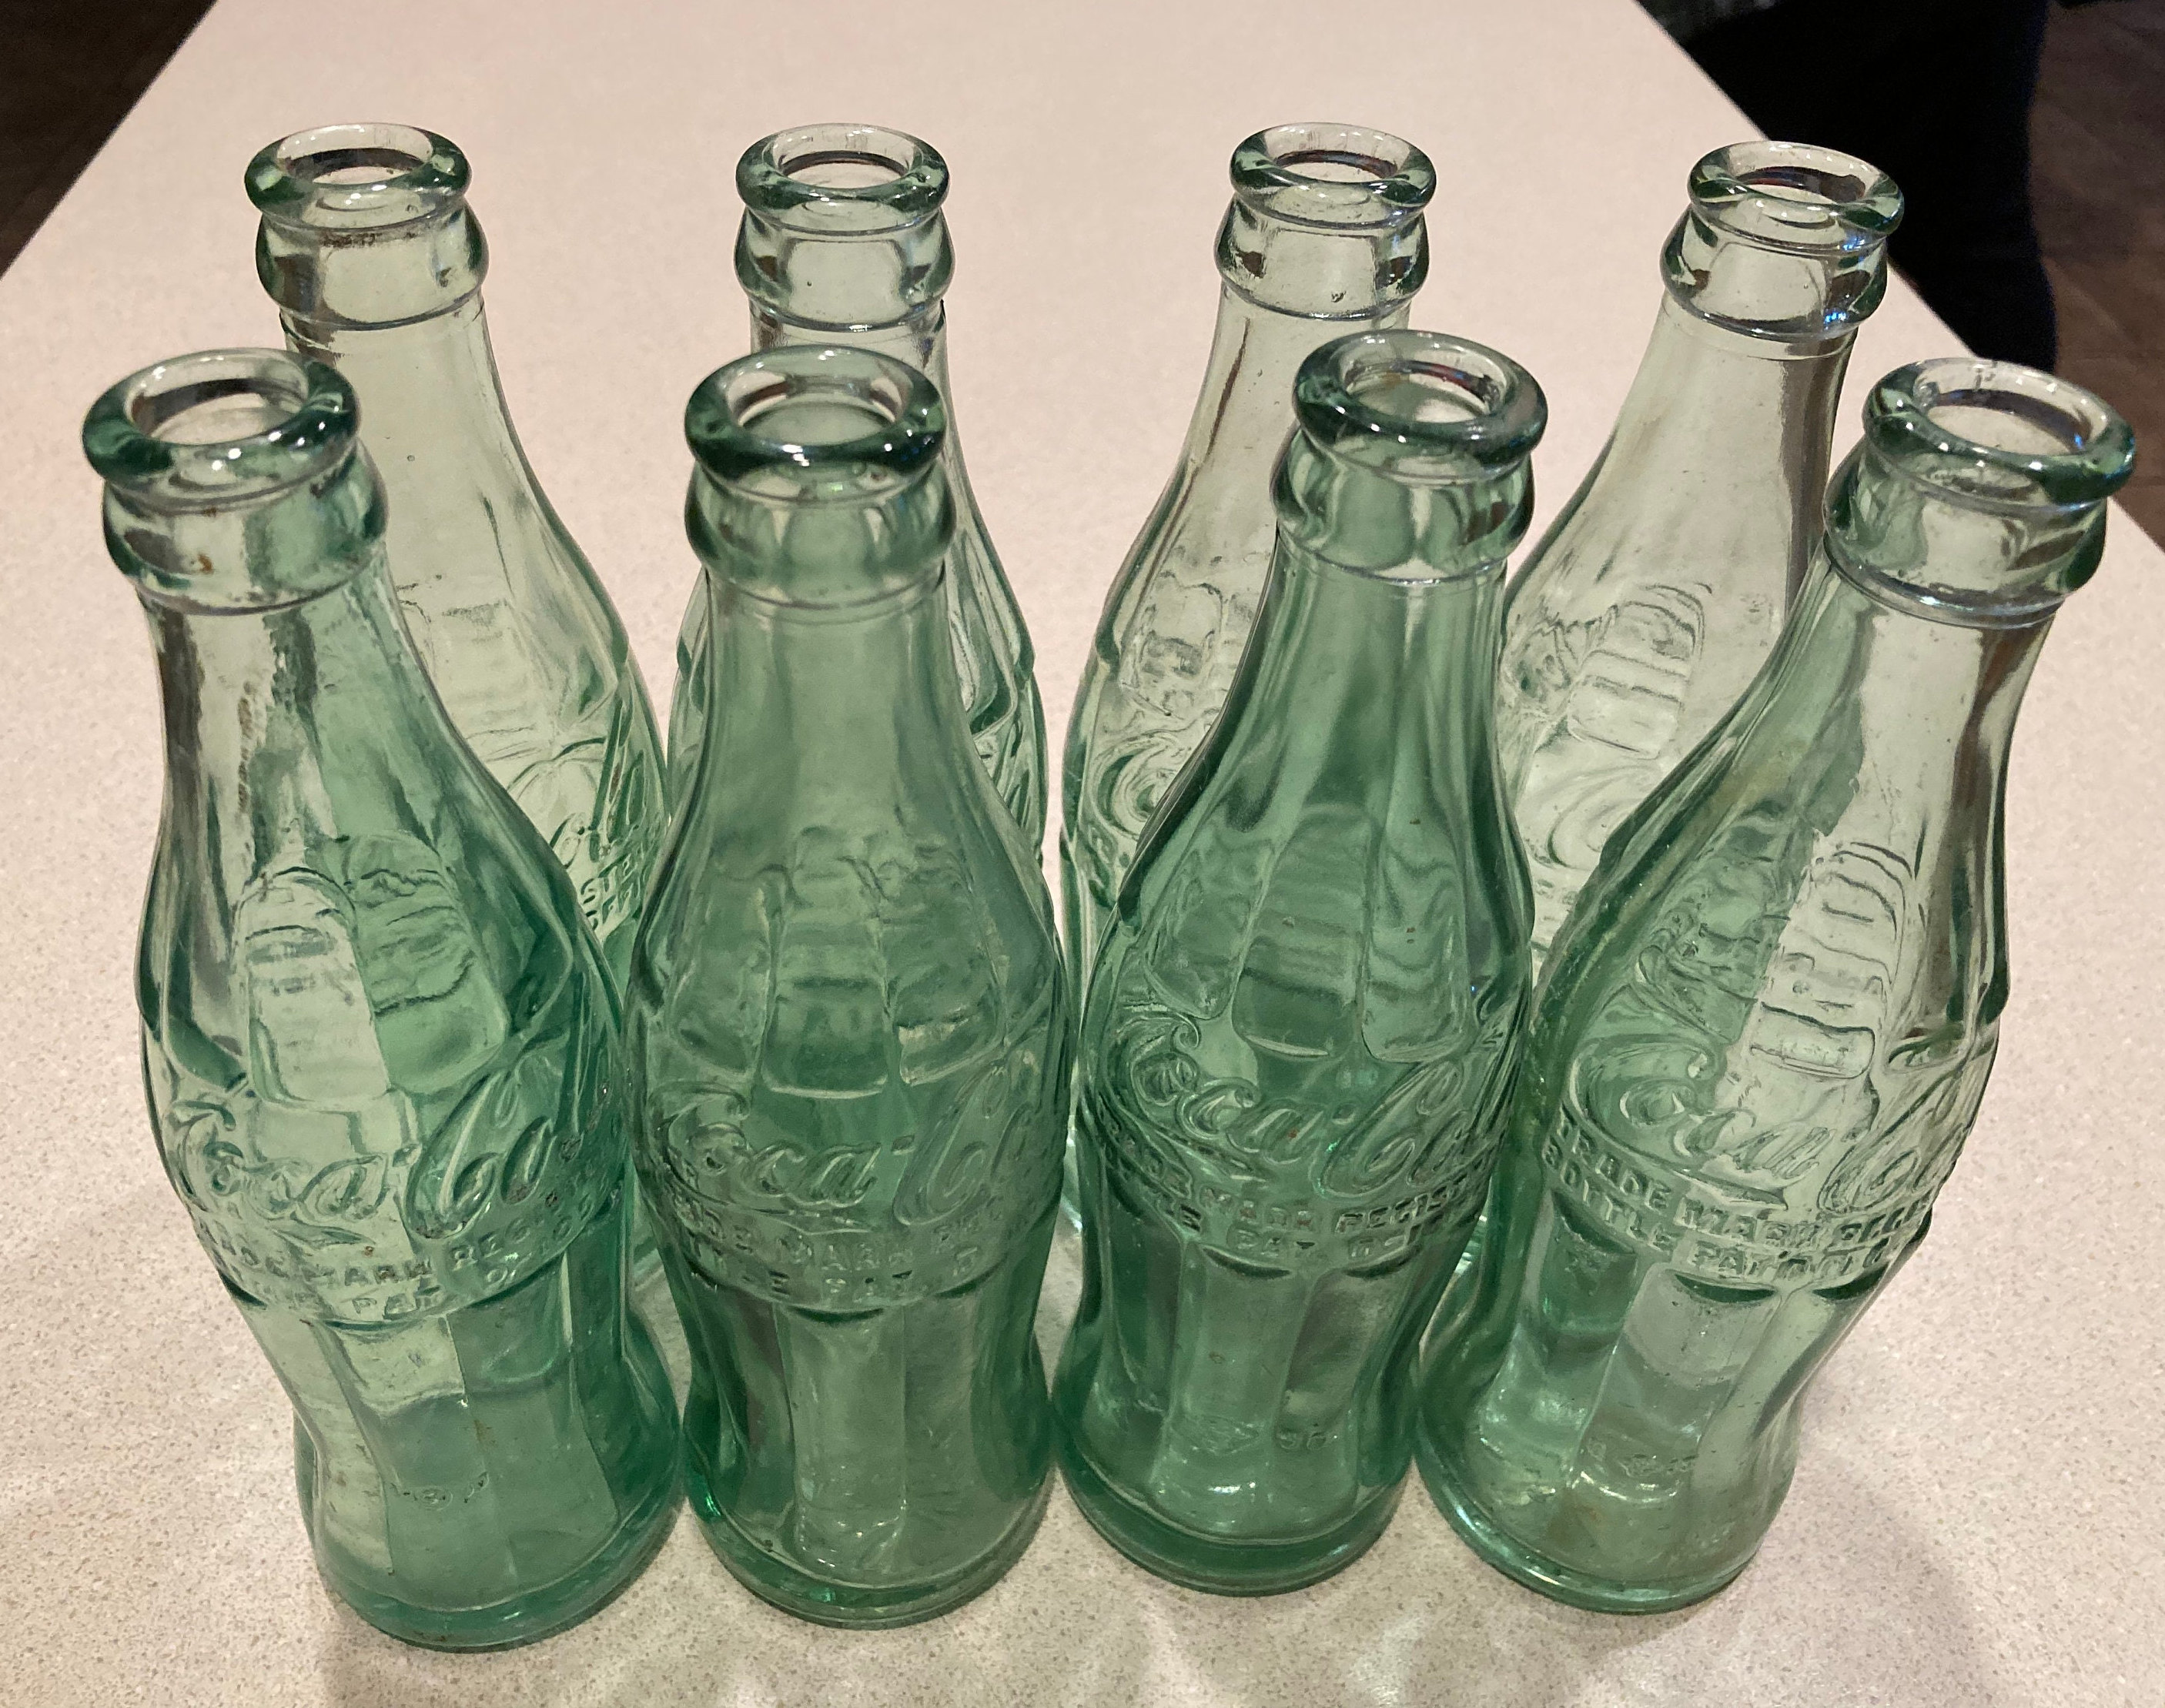 Vintage Bottle Coca Cola Bottle Old Coca Bottle Green Glass 